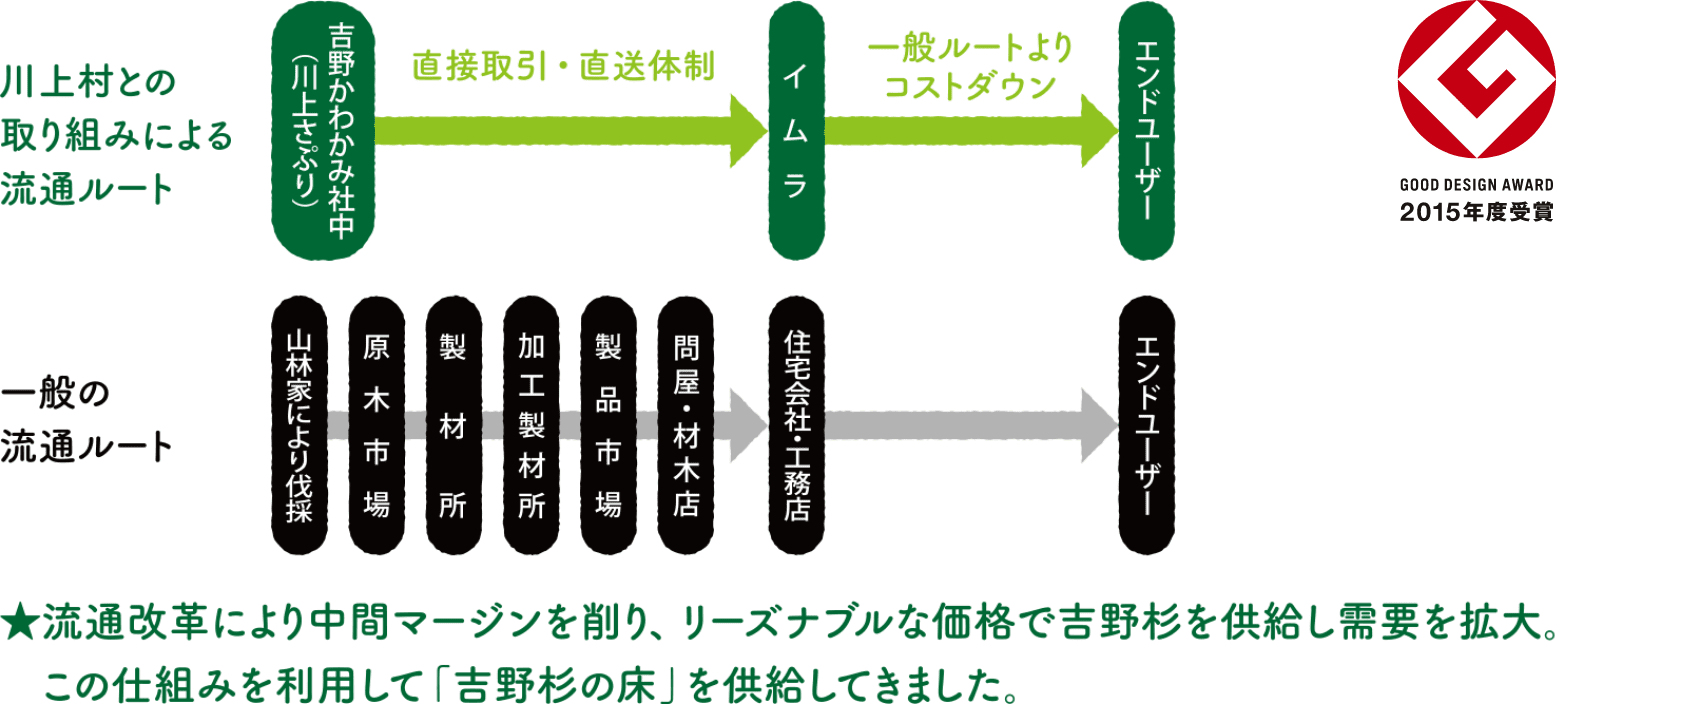 川上村との取り組みによる流通ルート